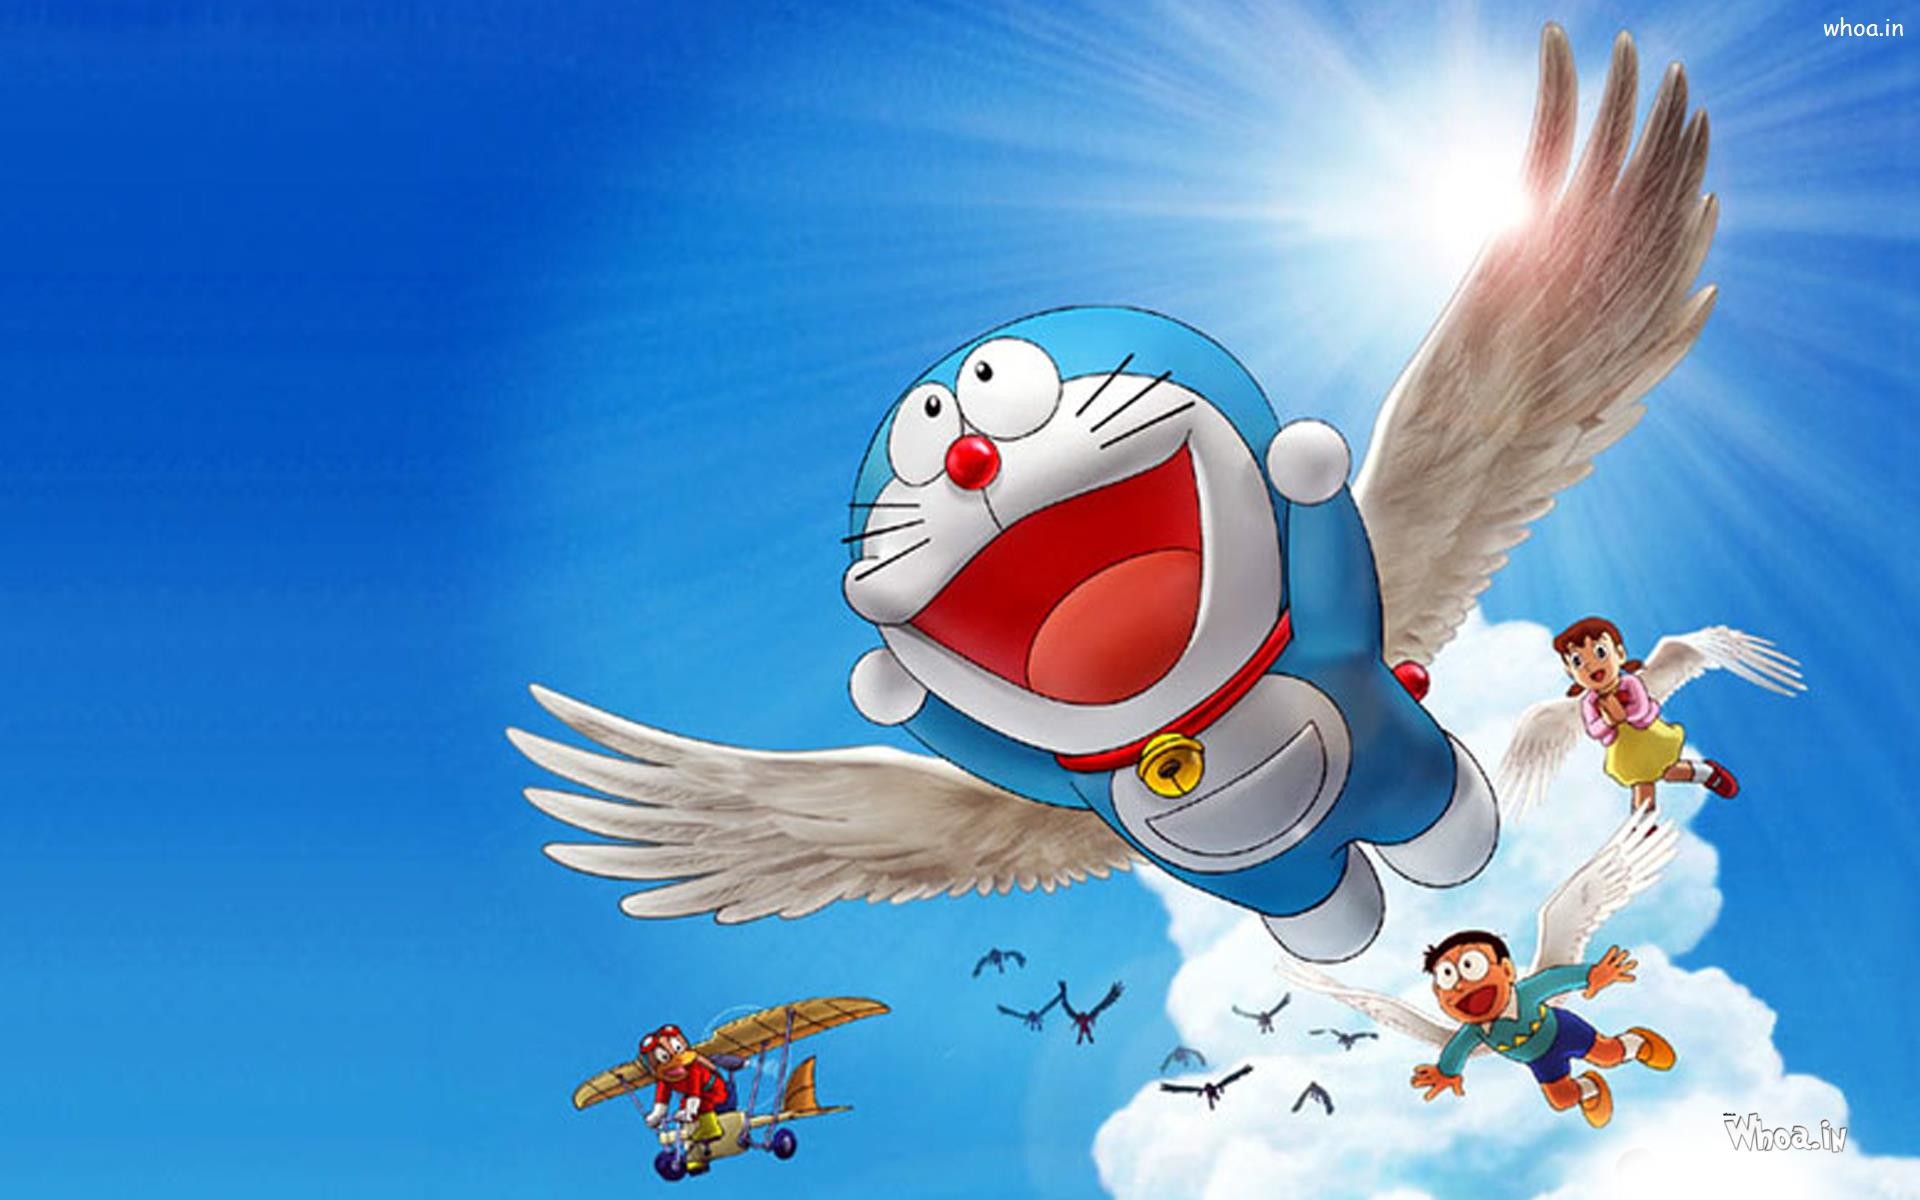 Hình nền Doraemon and Friends sẽ đem đến cho bạn niềm vui và sự thỏa mãn khi xem các nhân vật trong anime yêu thích của bạn. Các nhân vật trong bức hình đều trẻ trung và đầy sinh lực, cho bạn sức mạnh và năng lượng để đối mặt với những thử thách trong cuộc sống.